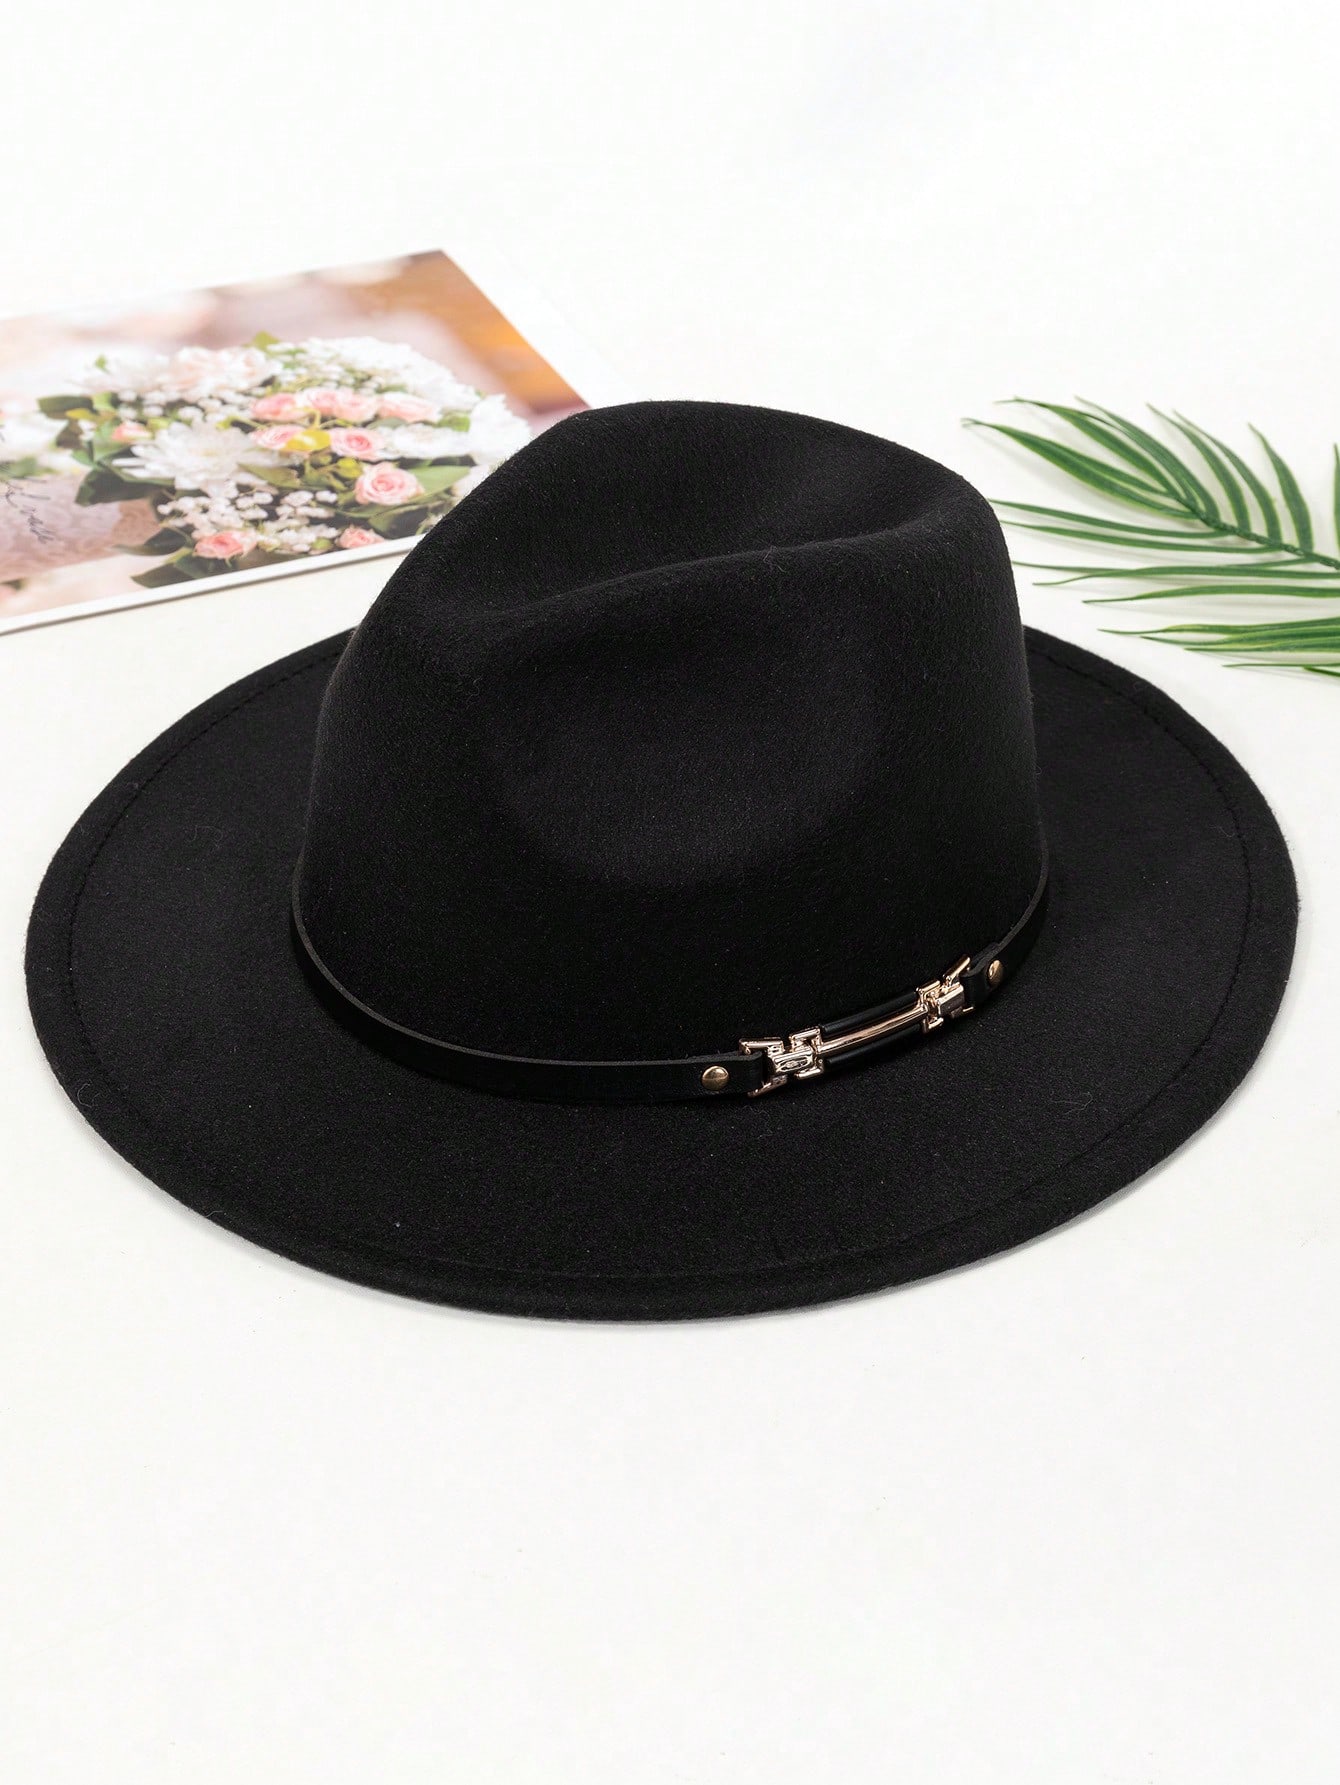 1 шт. черная элегантная солнцезащитная шерстяная шляпа в стиле джаз для мужчин, черный